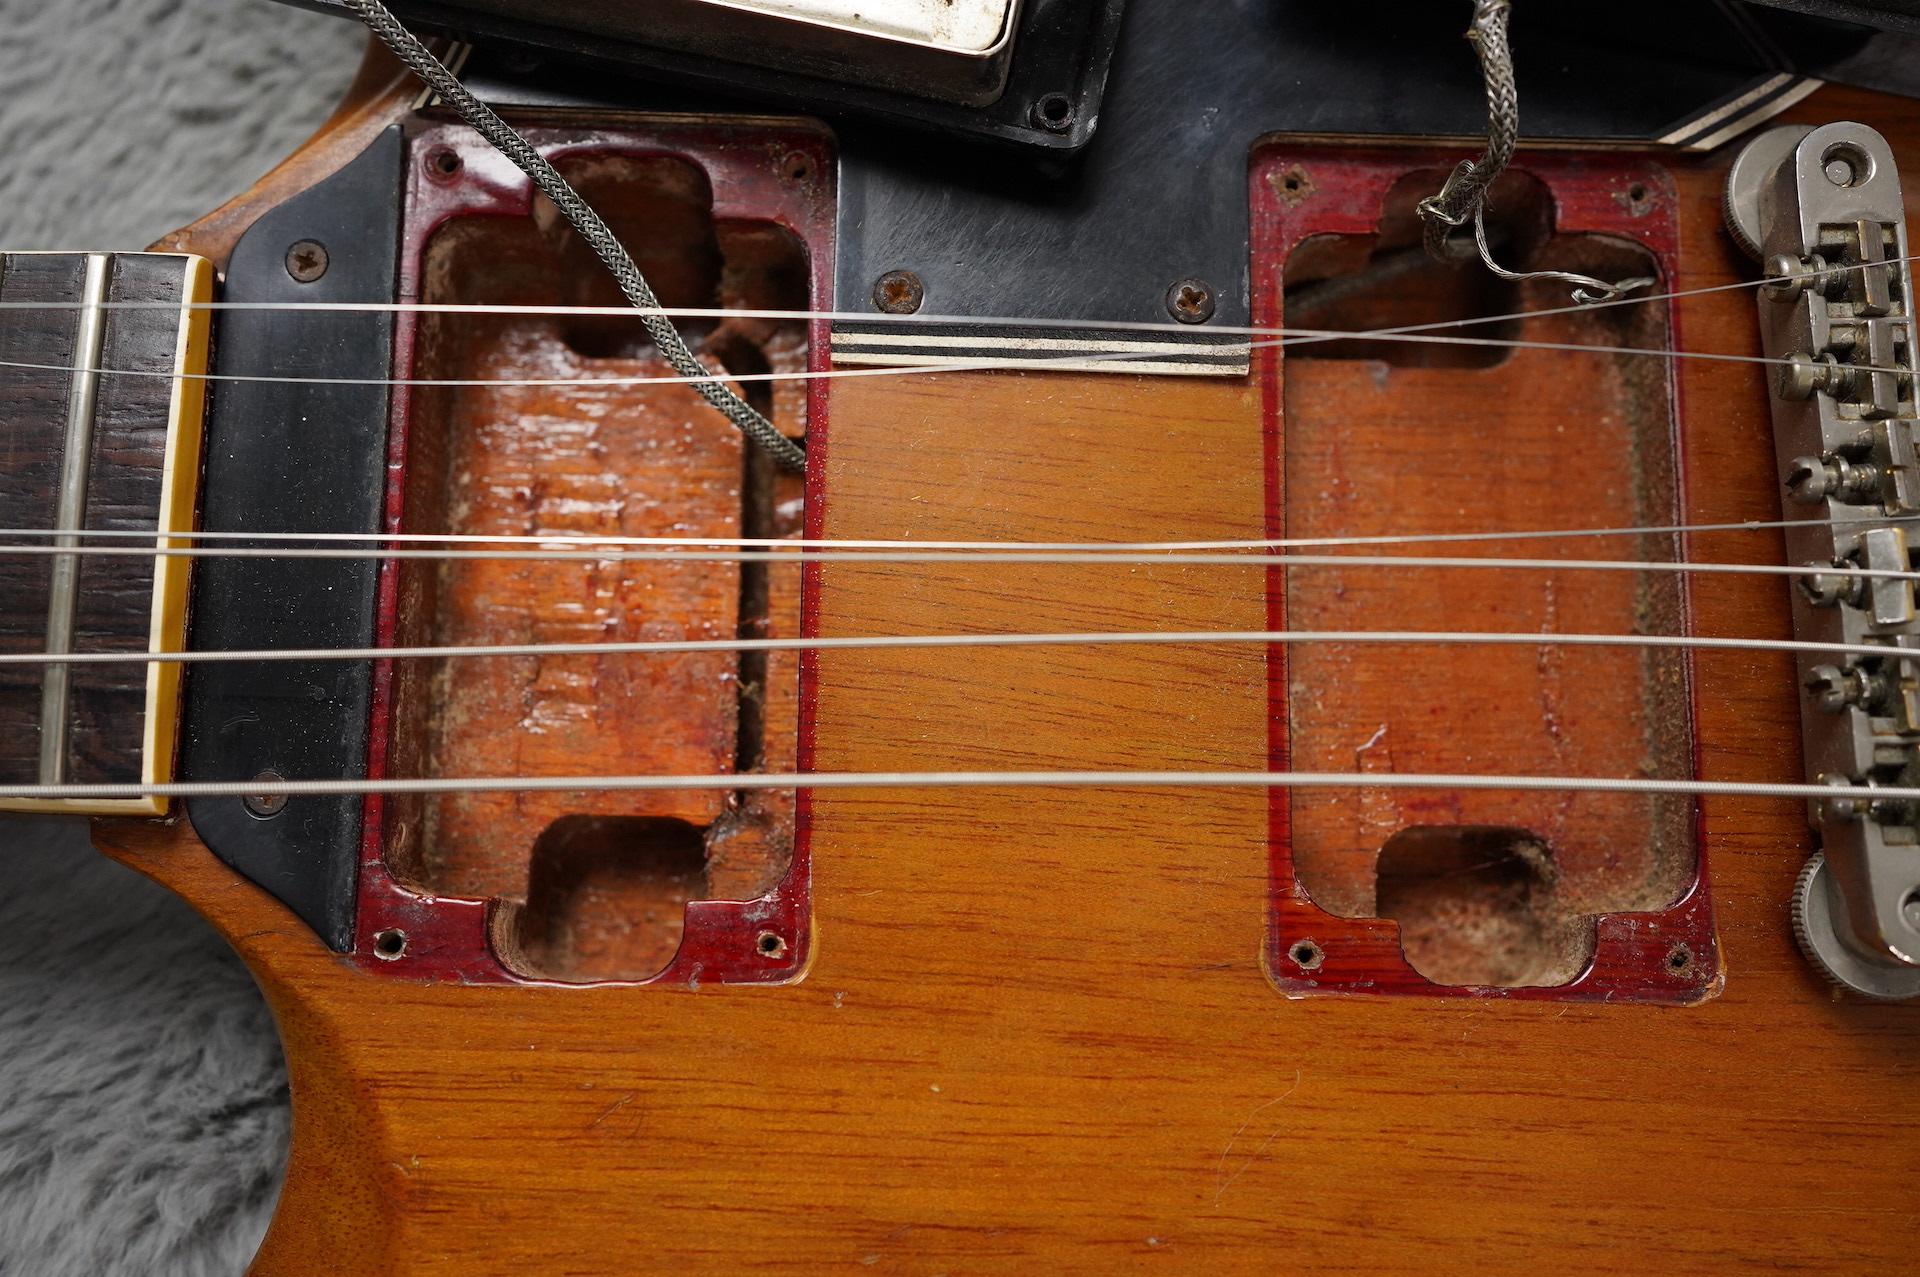 1961 Gibson Les Paul SG Standard